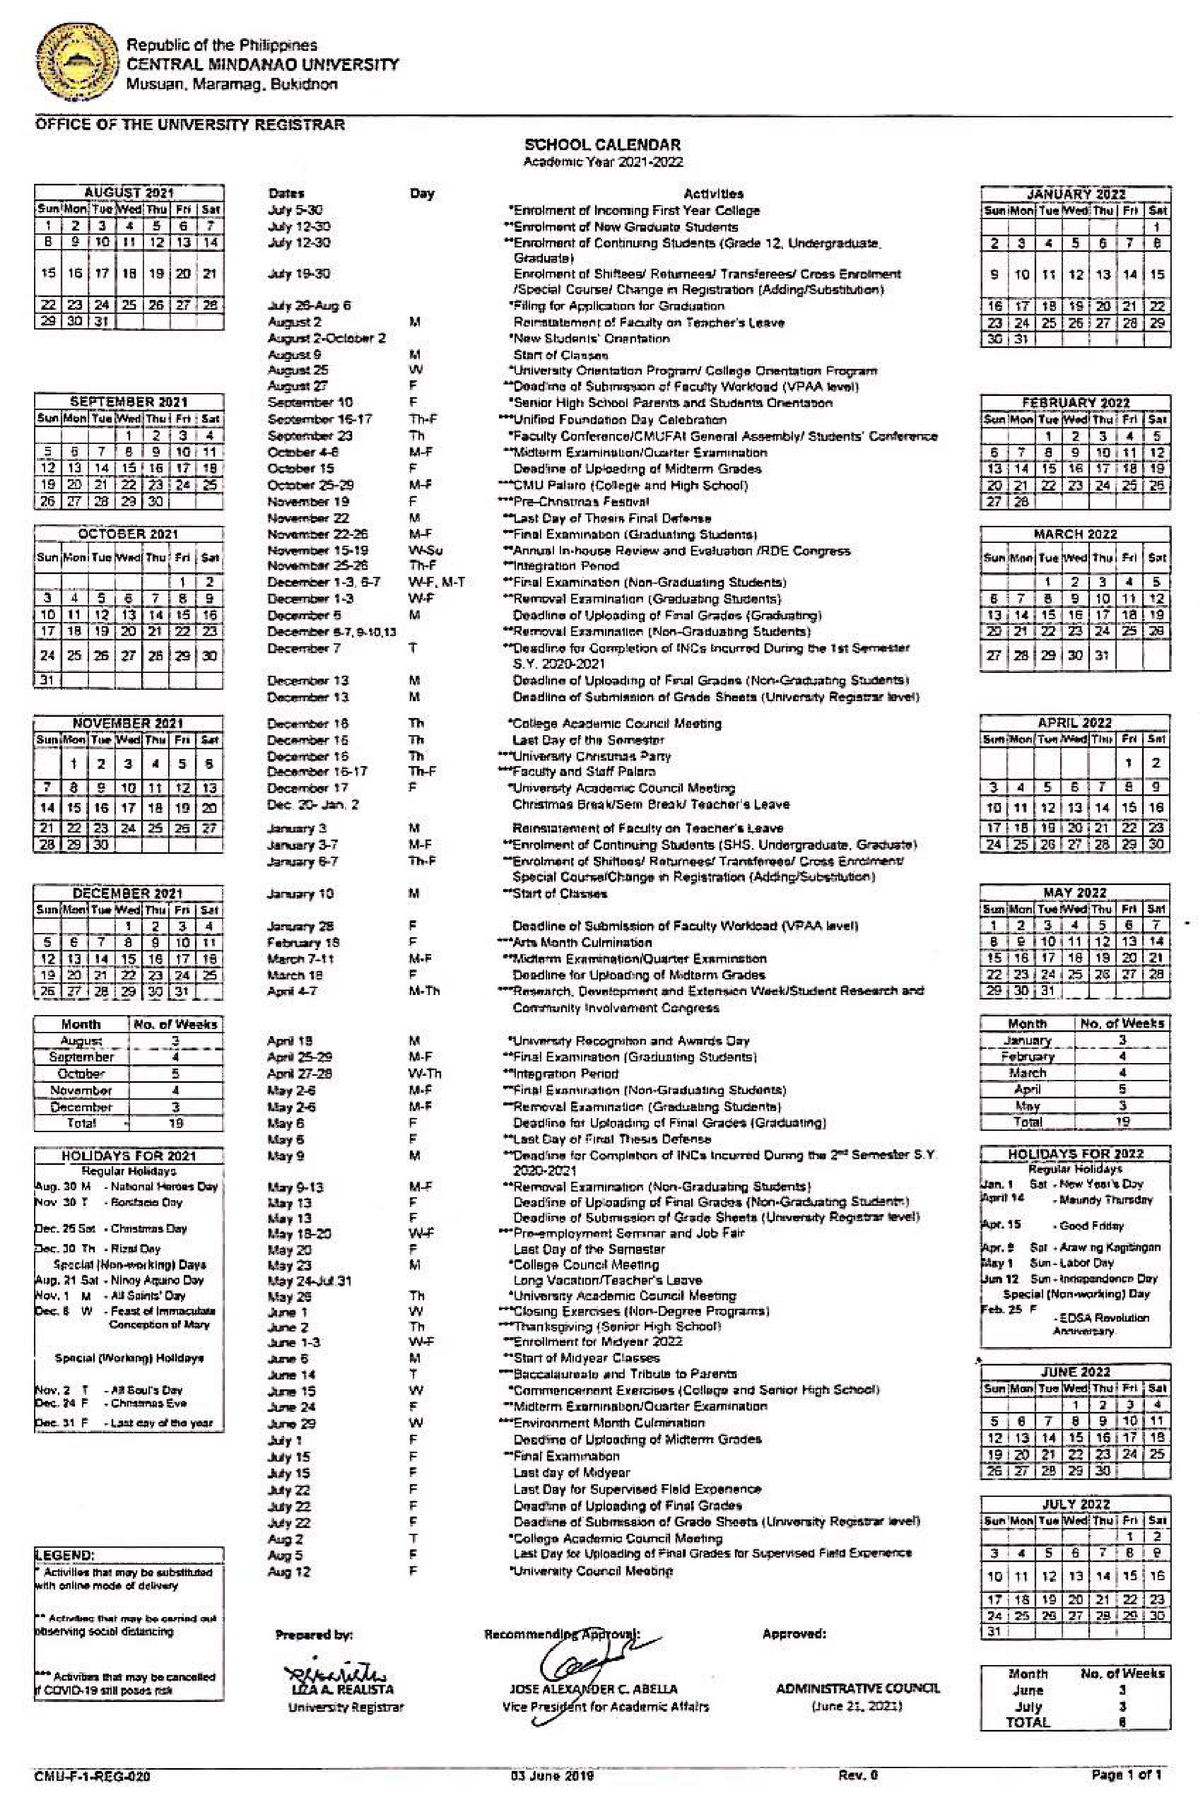 School Calendar 2021 - Schedule - education - Studocu